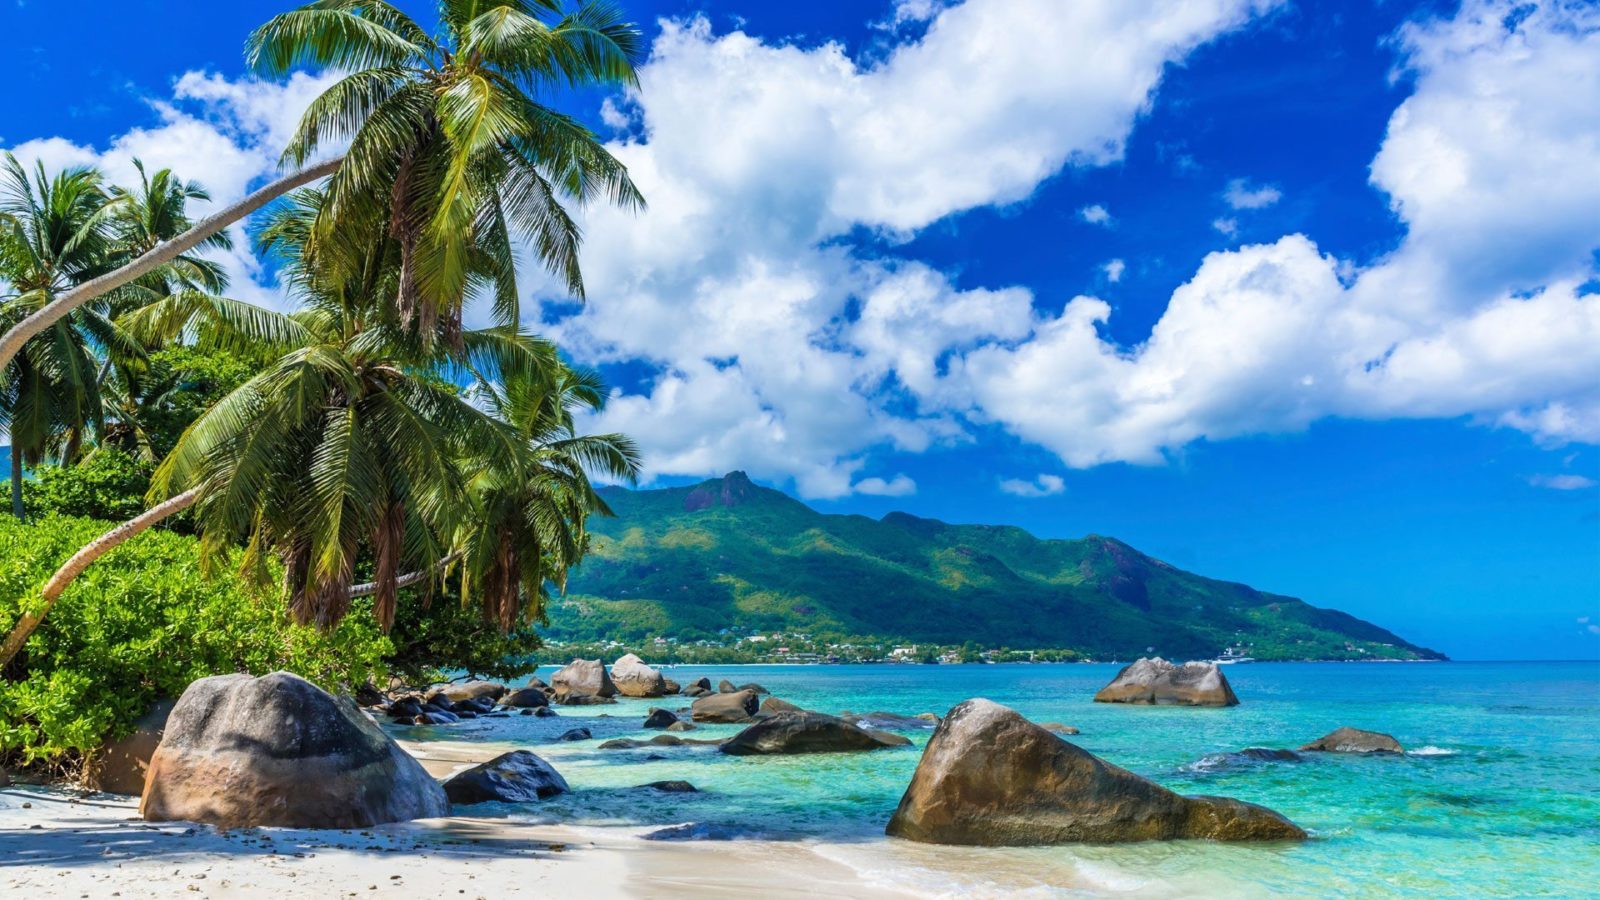 Vacanta in Insulele Seychelles. Tot ce trebuie sa stii pentru un sejur perfect: acte necesare, buget, obiective turistice